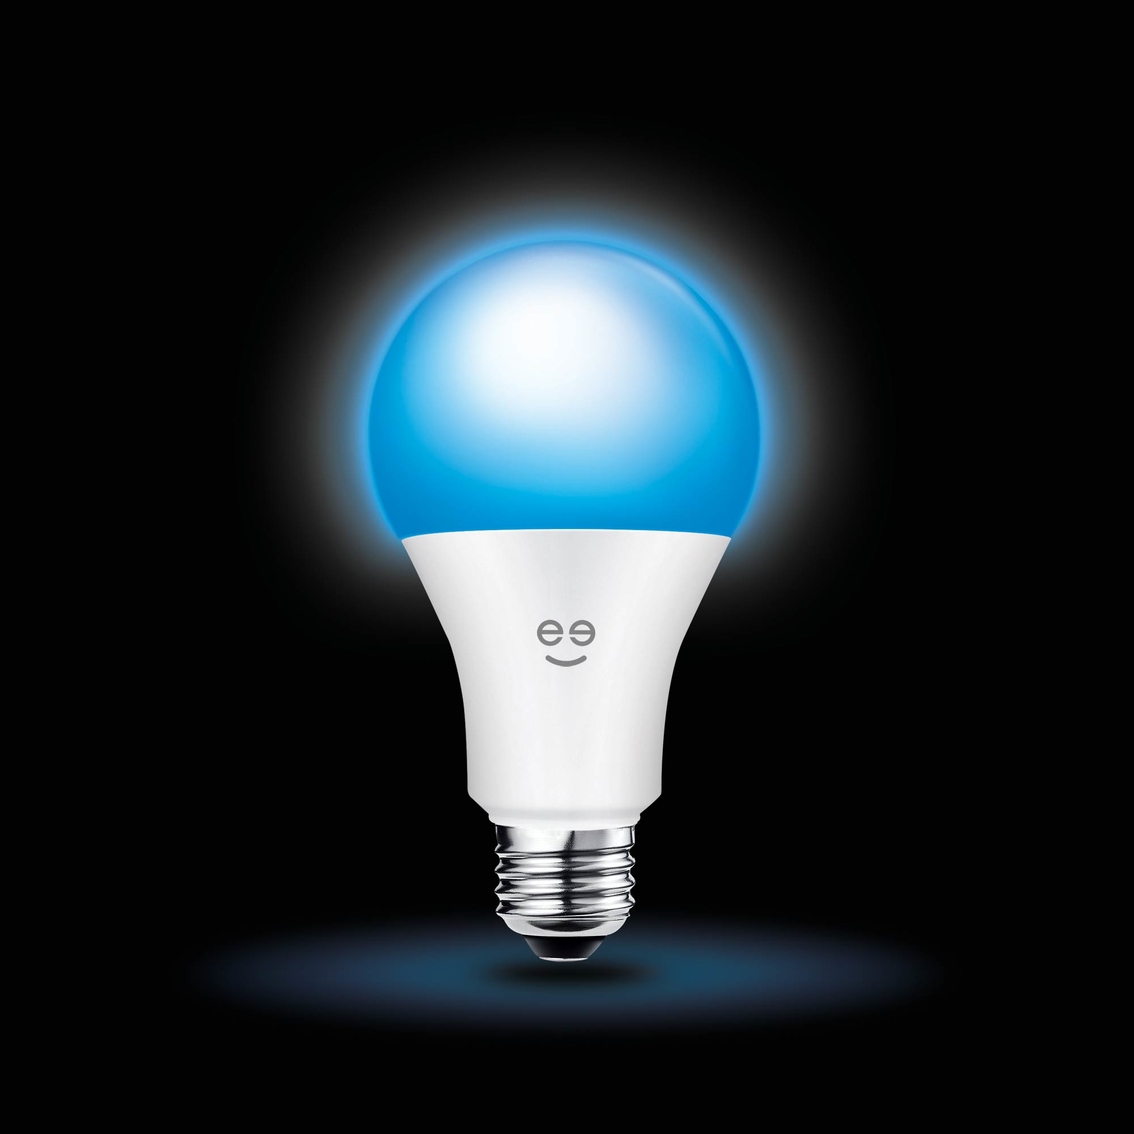 Geeni Prisma 1050 Smart WiFi Multicolor LED Bulb - Image 1 of 3